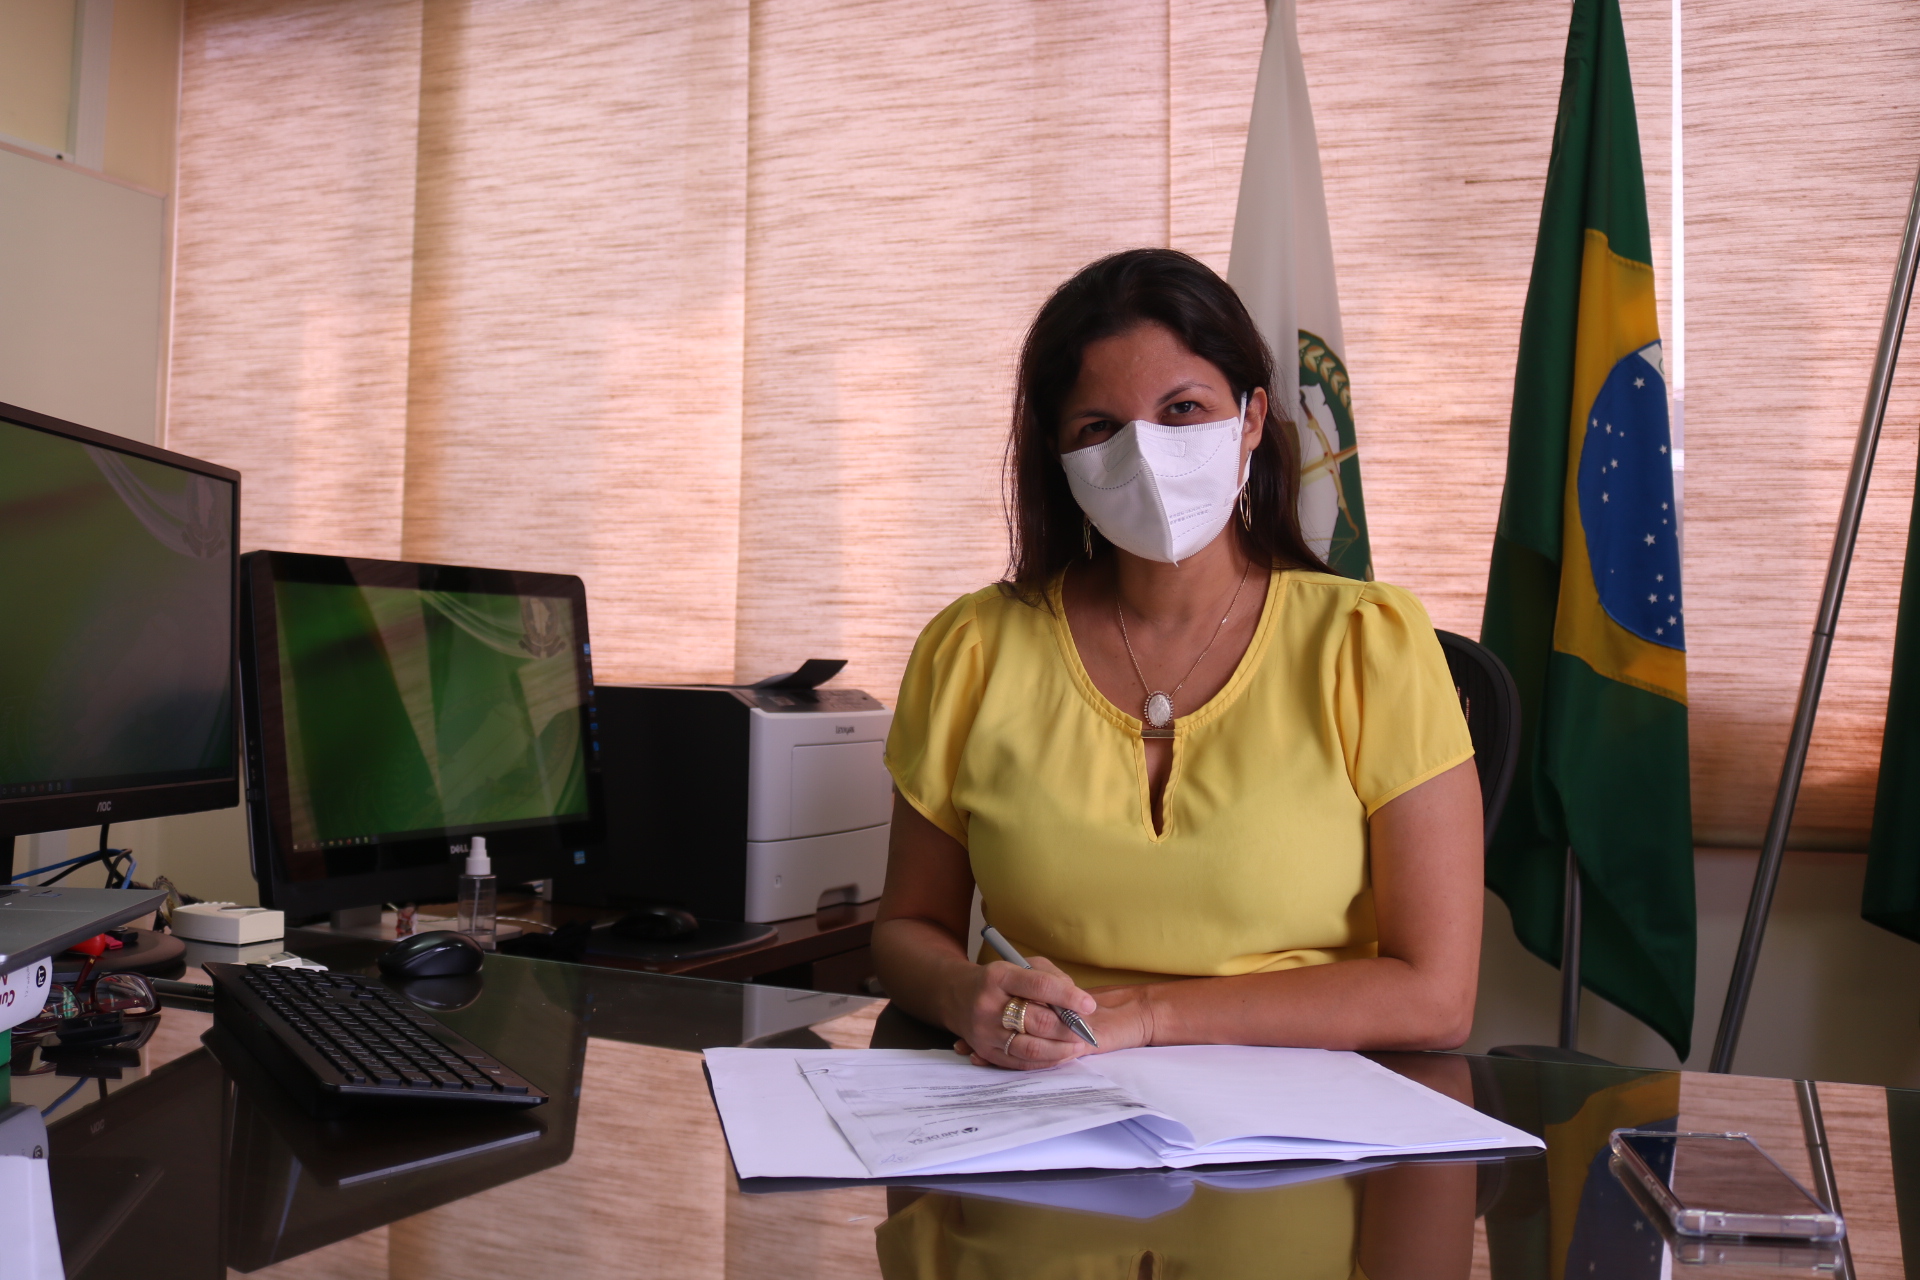 Defensoria Pública firma parceria para o setor de psicossocial, que vem batendo recordes de atendimentos remotos